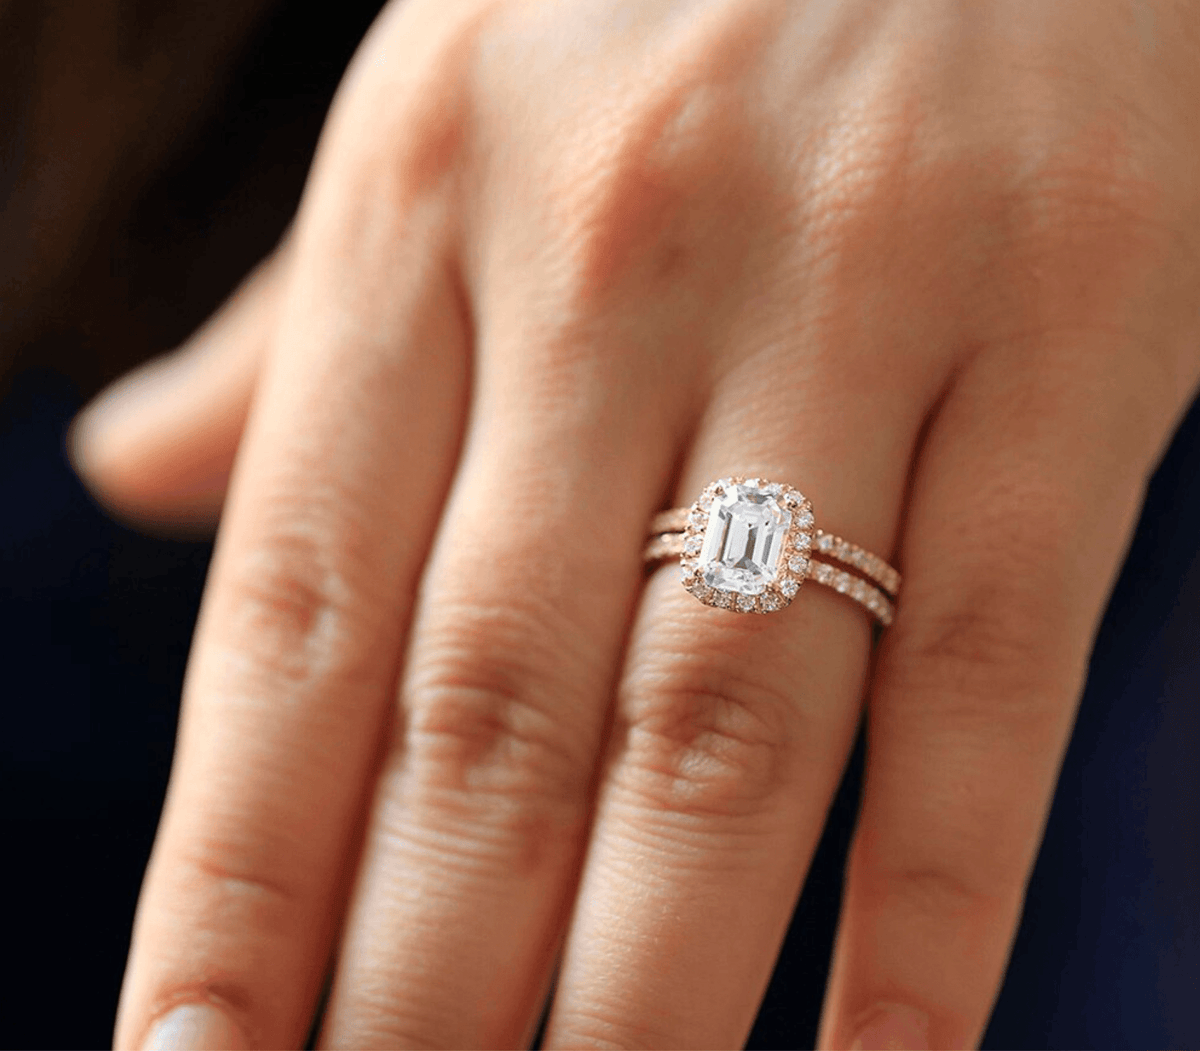 Beautiful Diamond Ring Set with Emerald Cut Stone and Matching Band